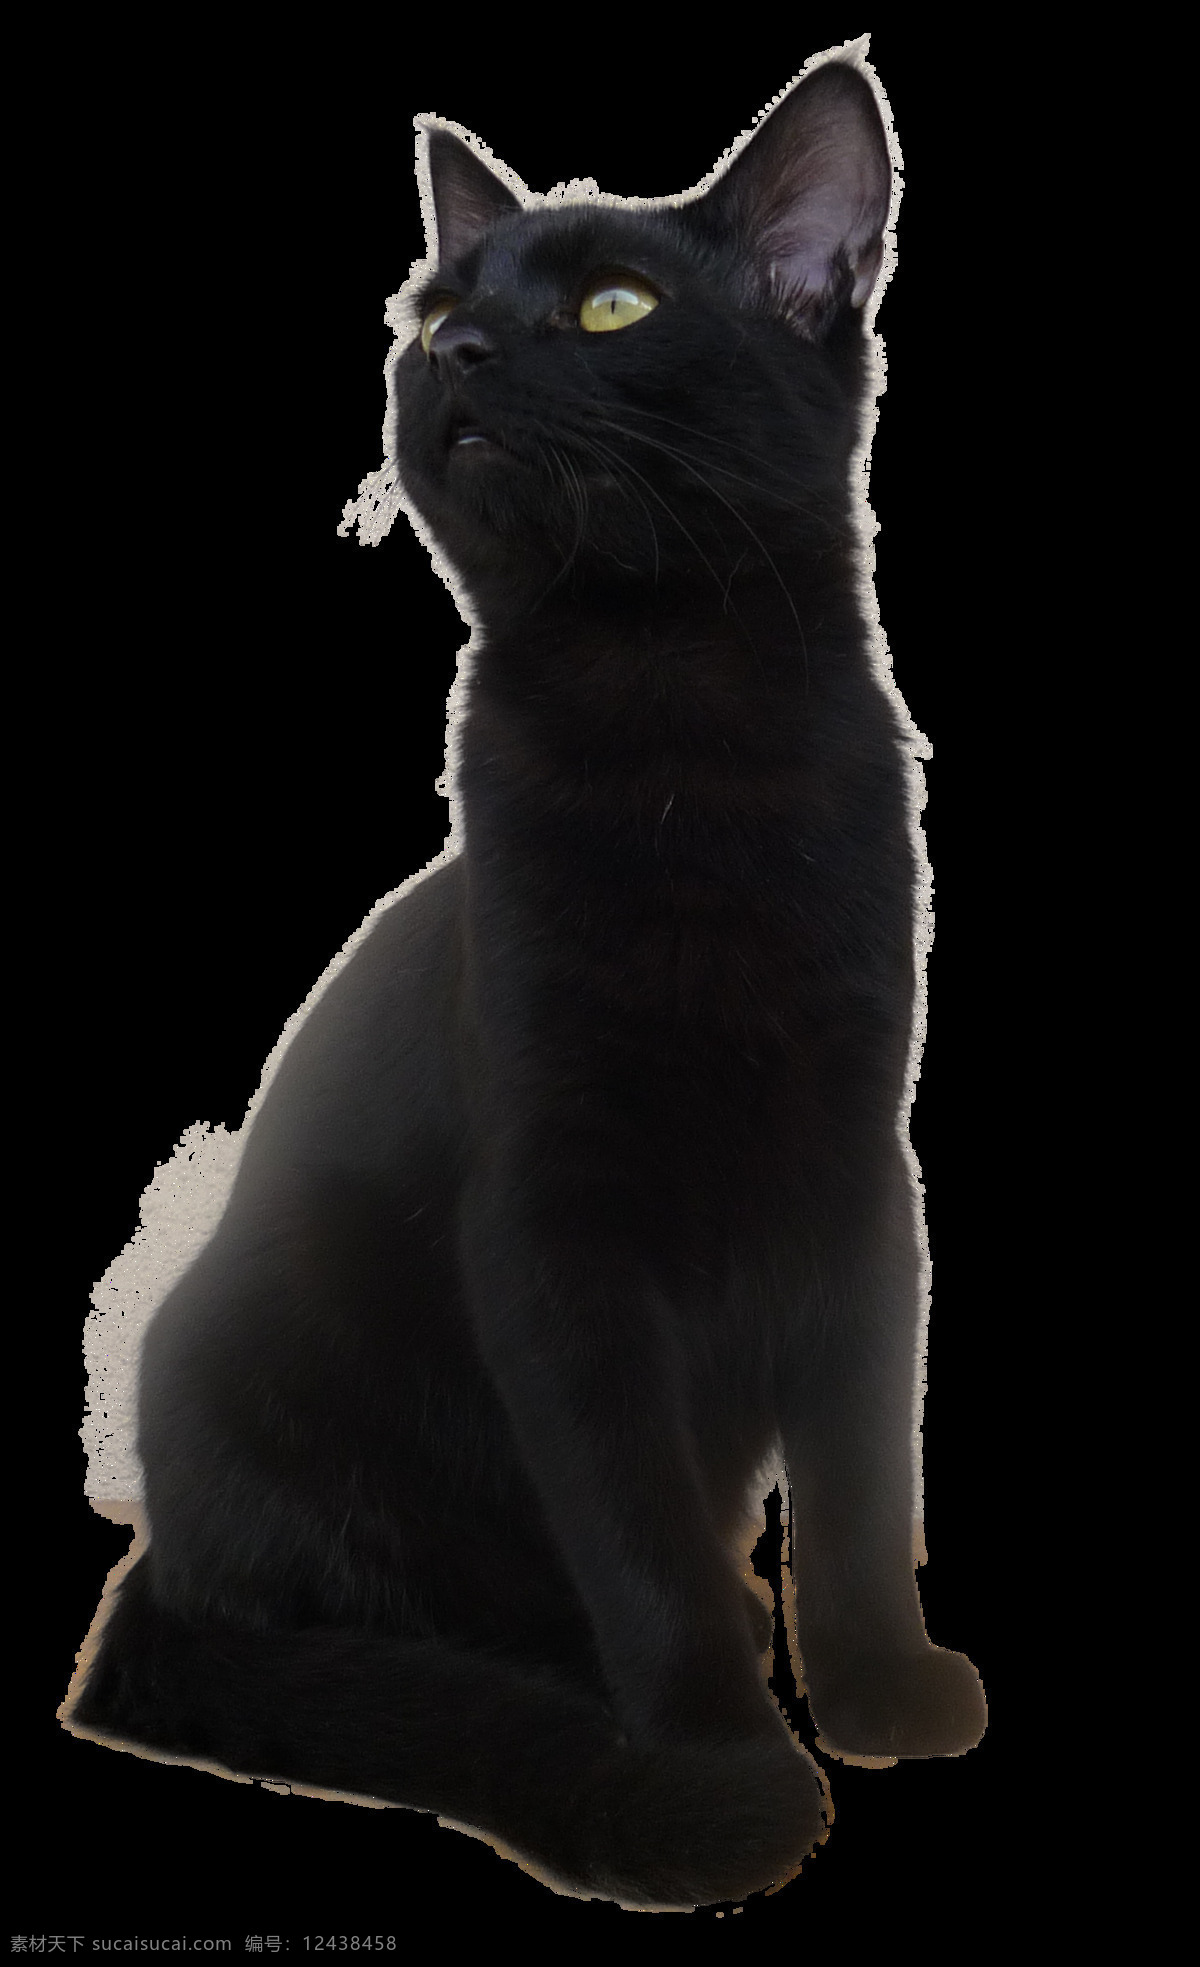 蹲 仰望 黑猫 免 抠 透明 小 猫咪 猫 小猫 小猫图片 猫咪素材 小猫素材